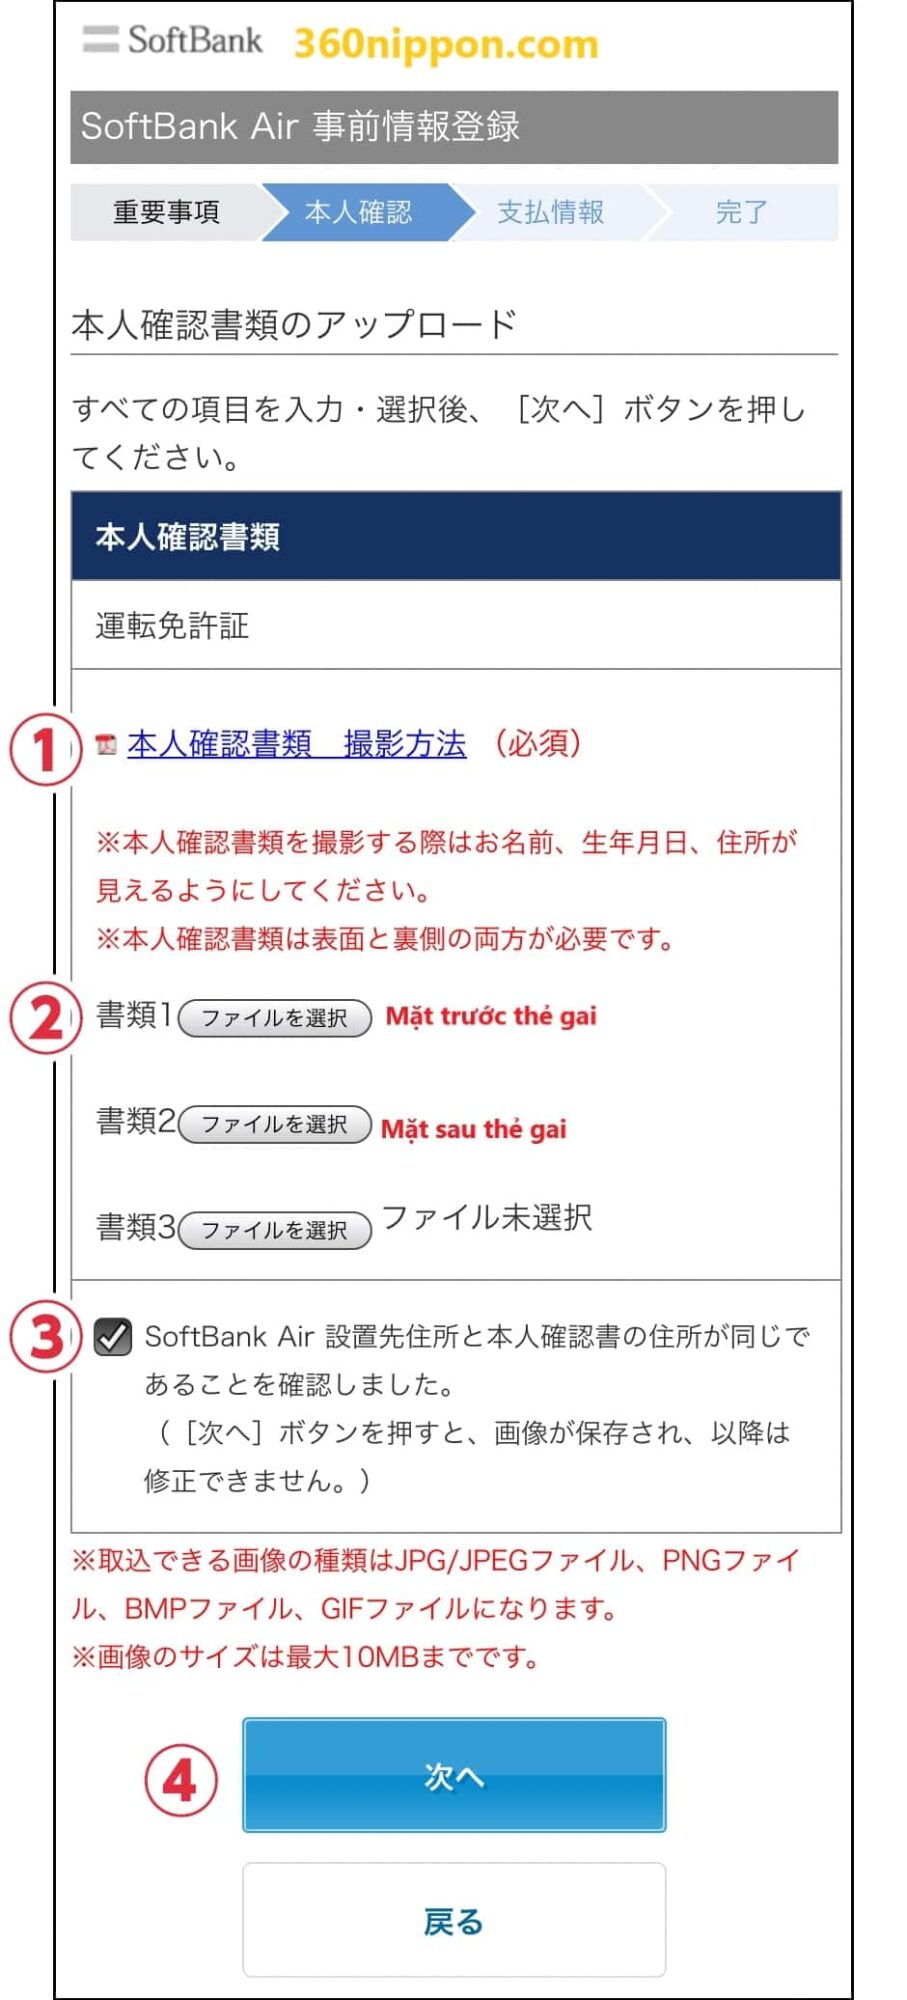 Hướng dẫn đăng ký wifi cố định softbank ở Nhật 142